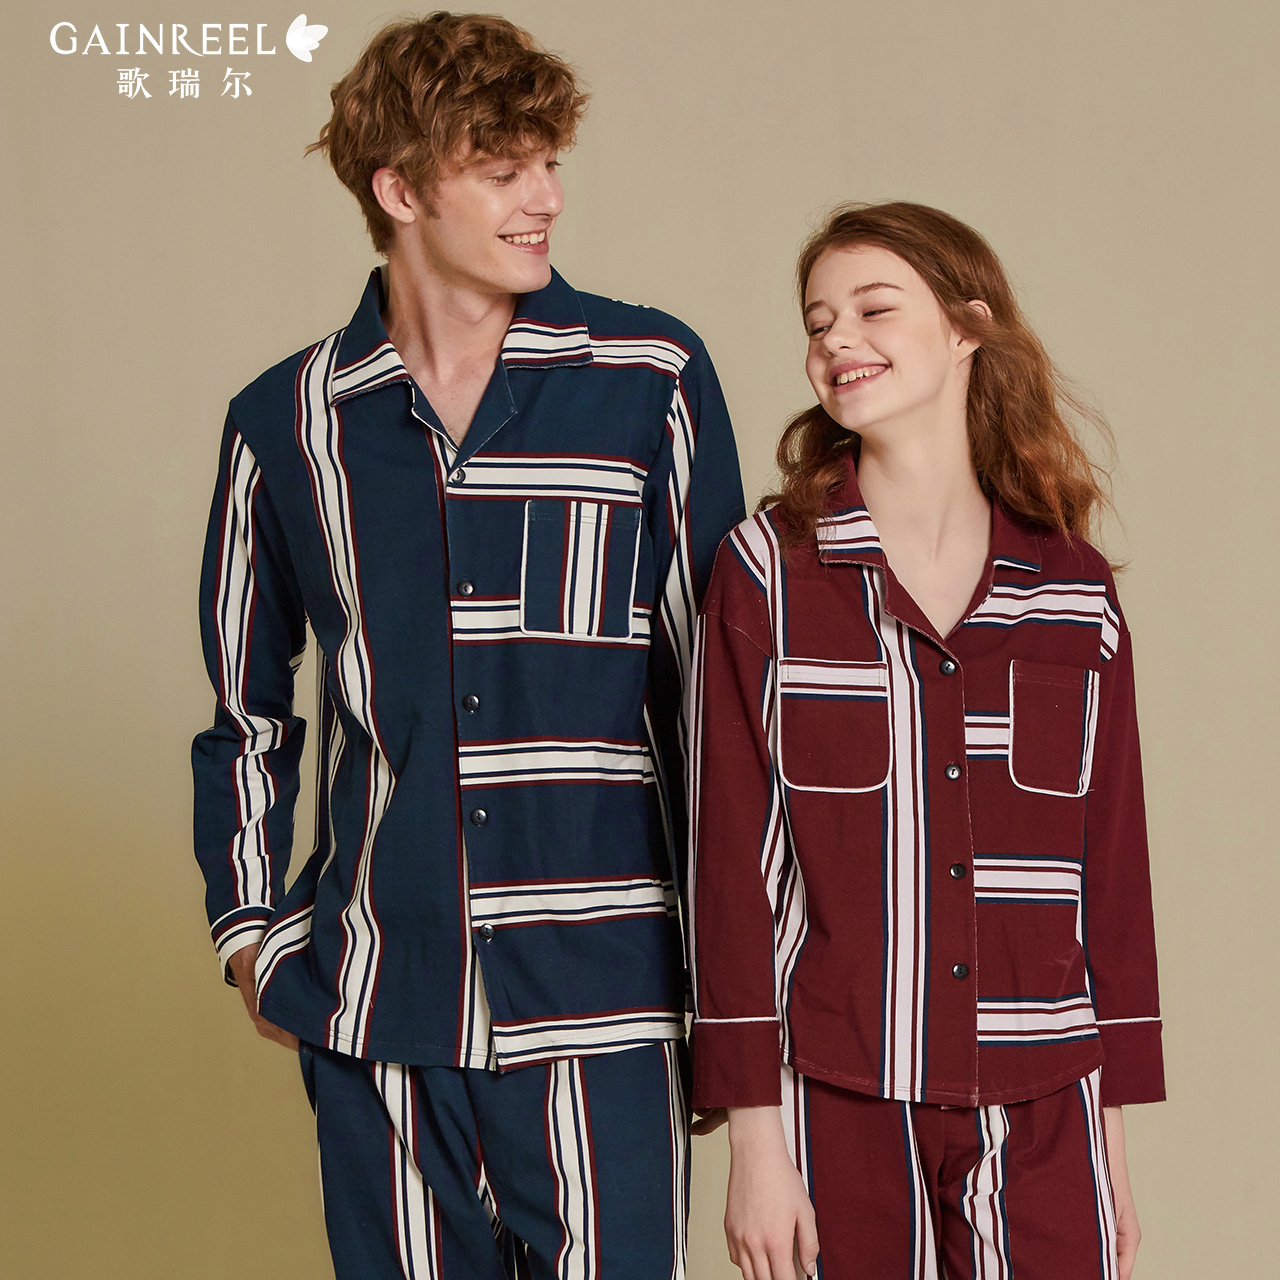 歌瑞尔条纹舒适纯棉男女睡衣预售,降价幅度10%